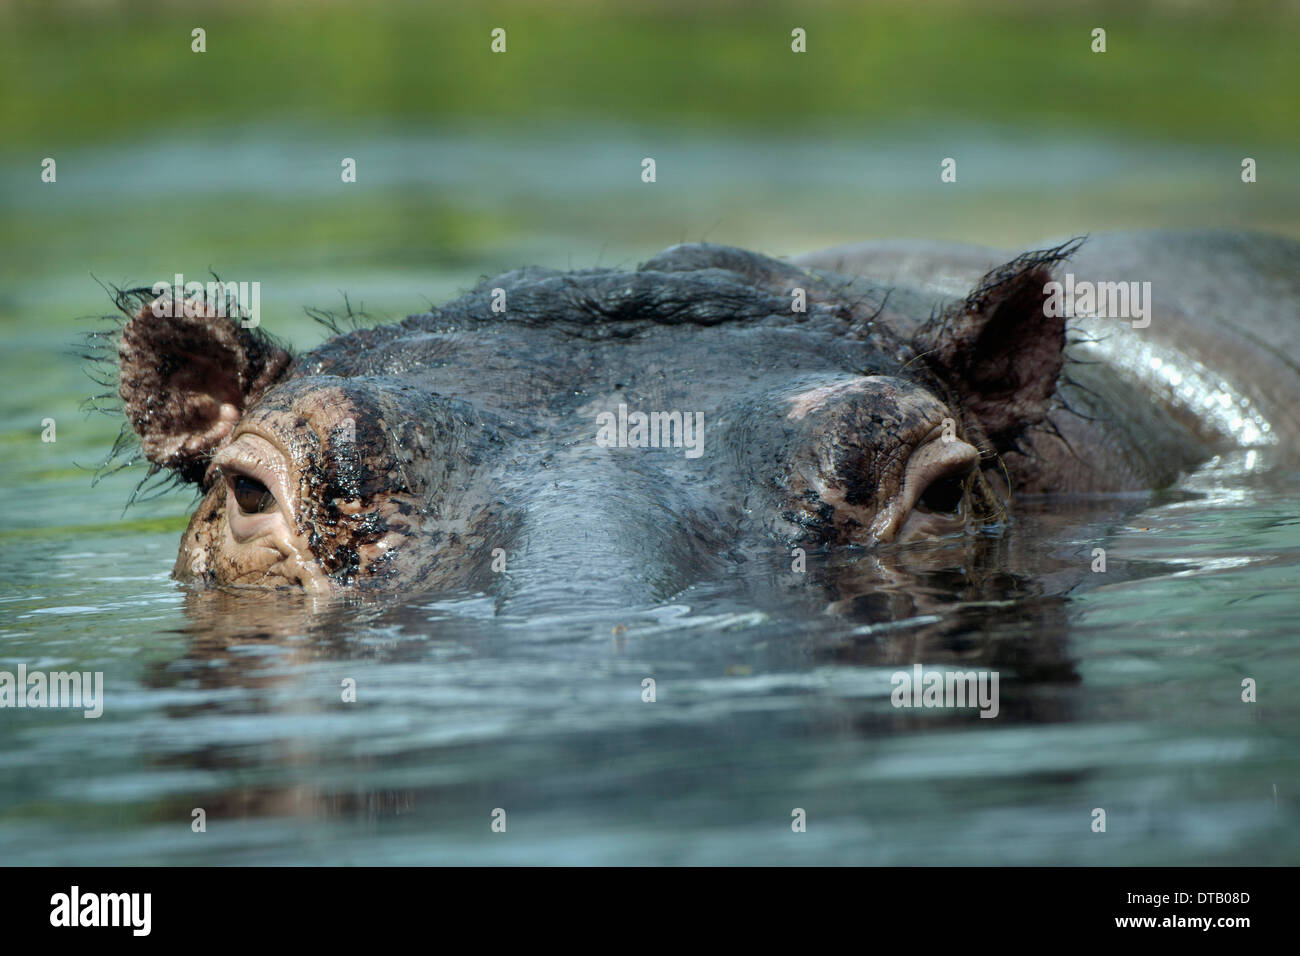 Hippopotamus swimming in water, close-up Stock Photo